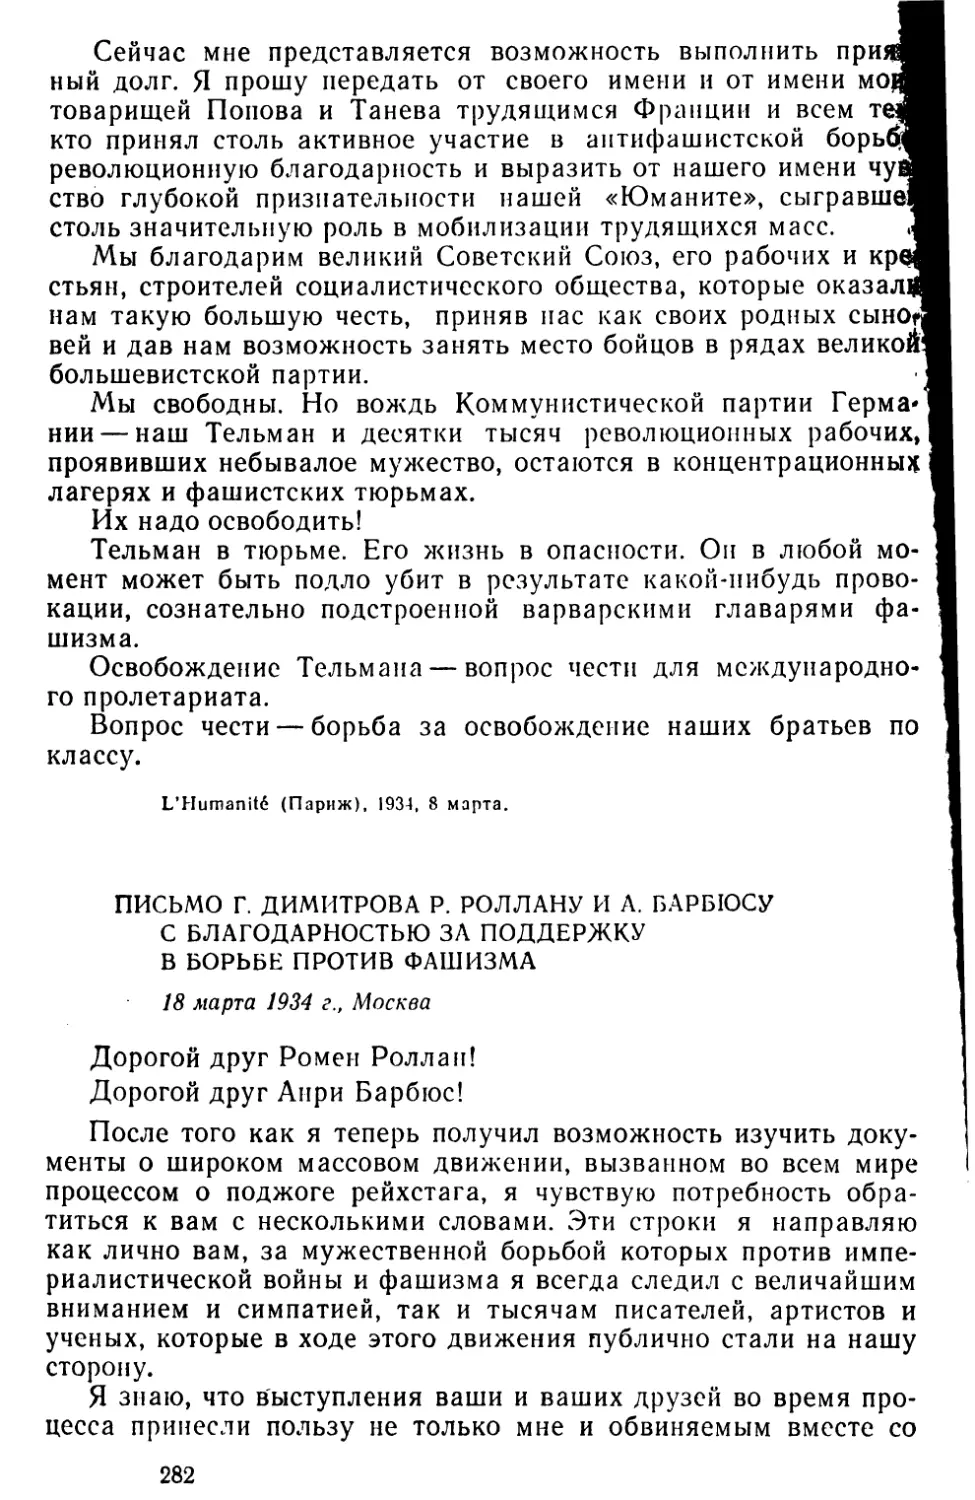 Письмо Г. Димитрова Р. Роллану и Л. Барбюсу с благодарностью за поддержку в борьбе против фашизма. 18 марта 1934 г